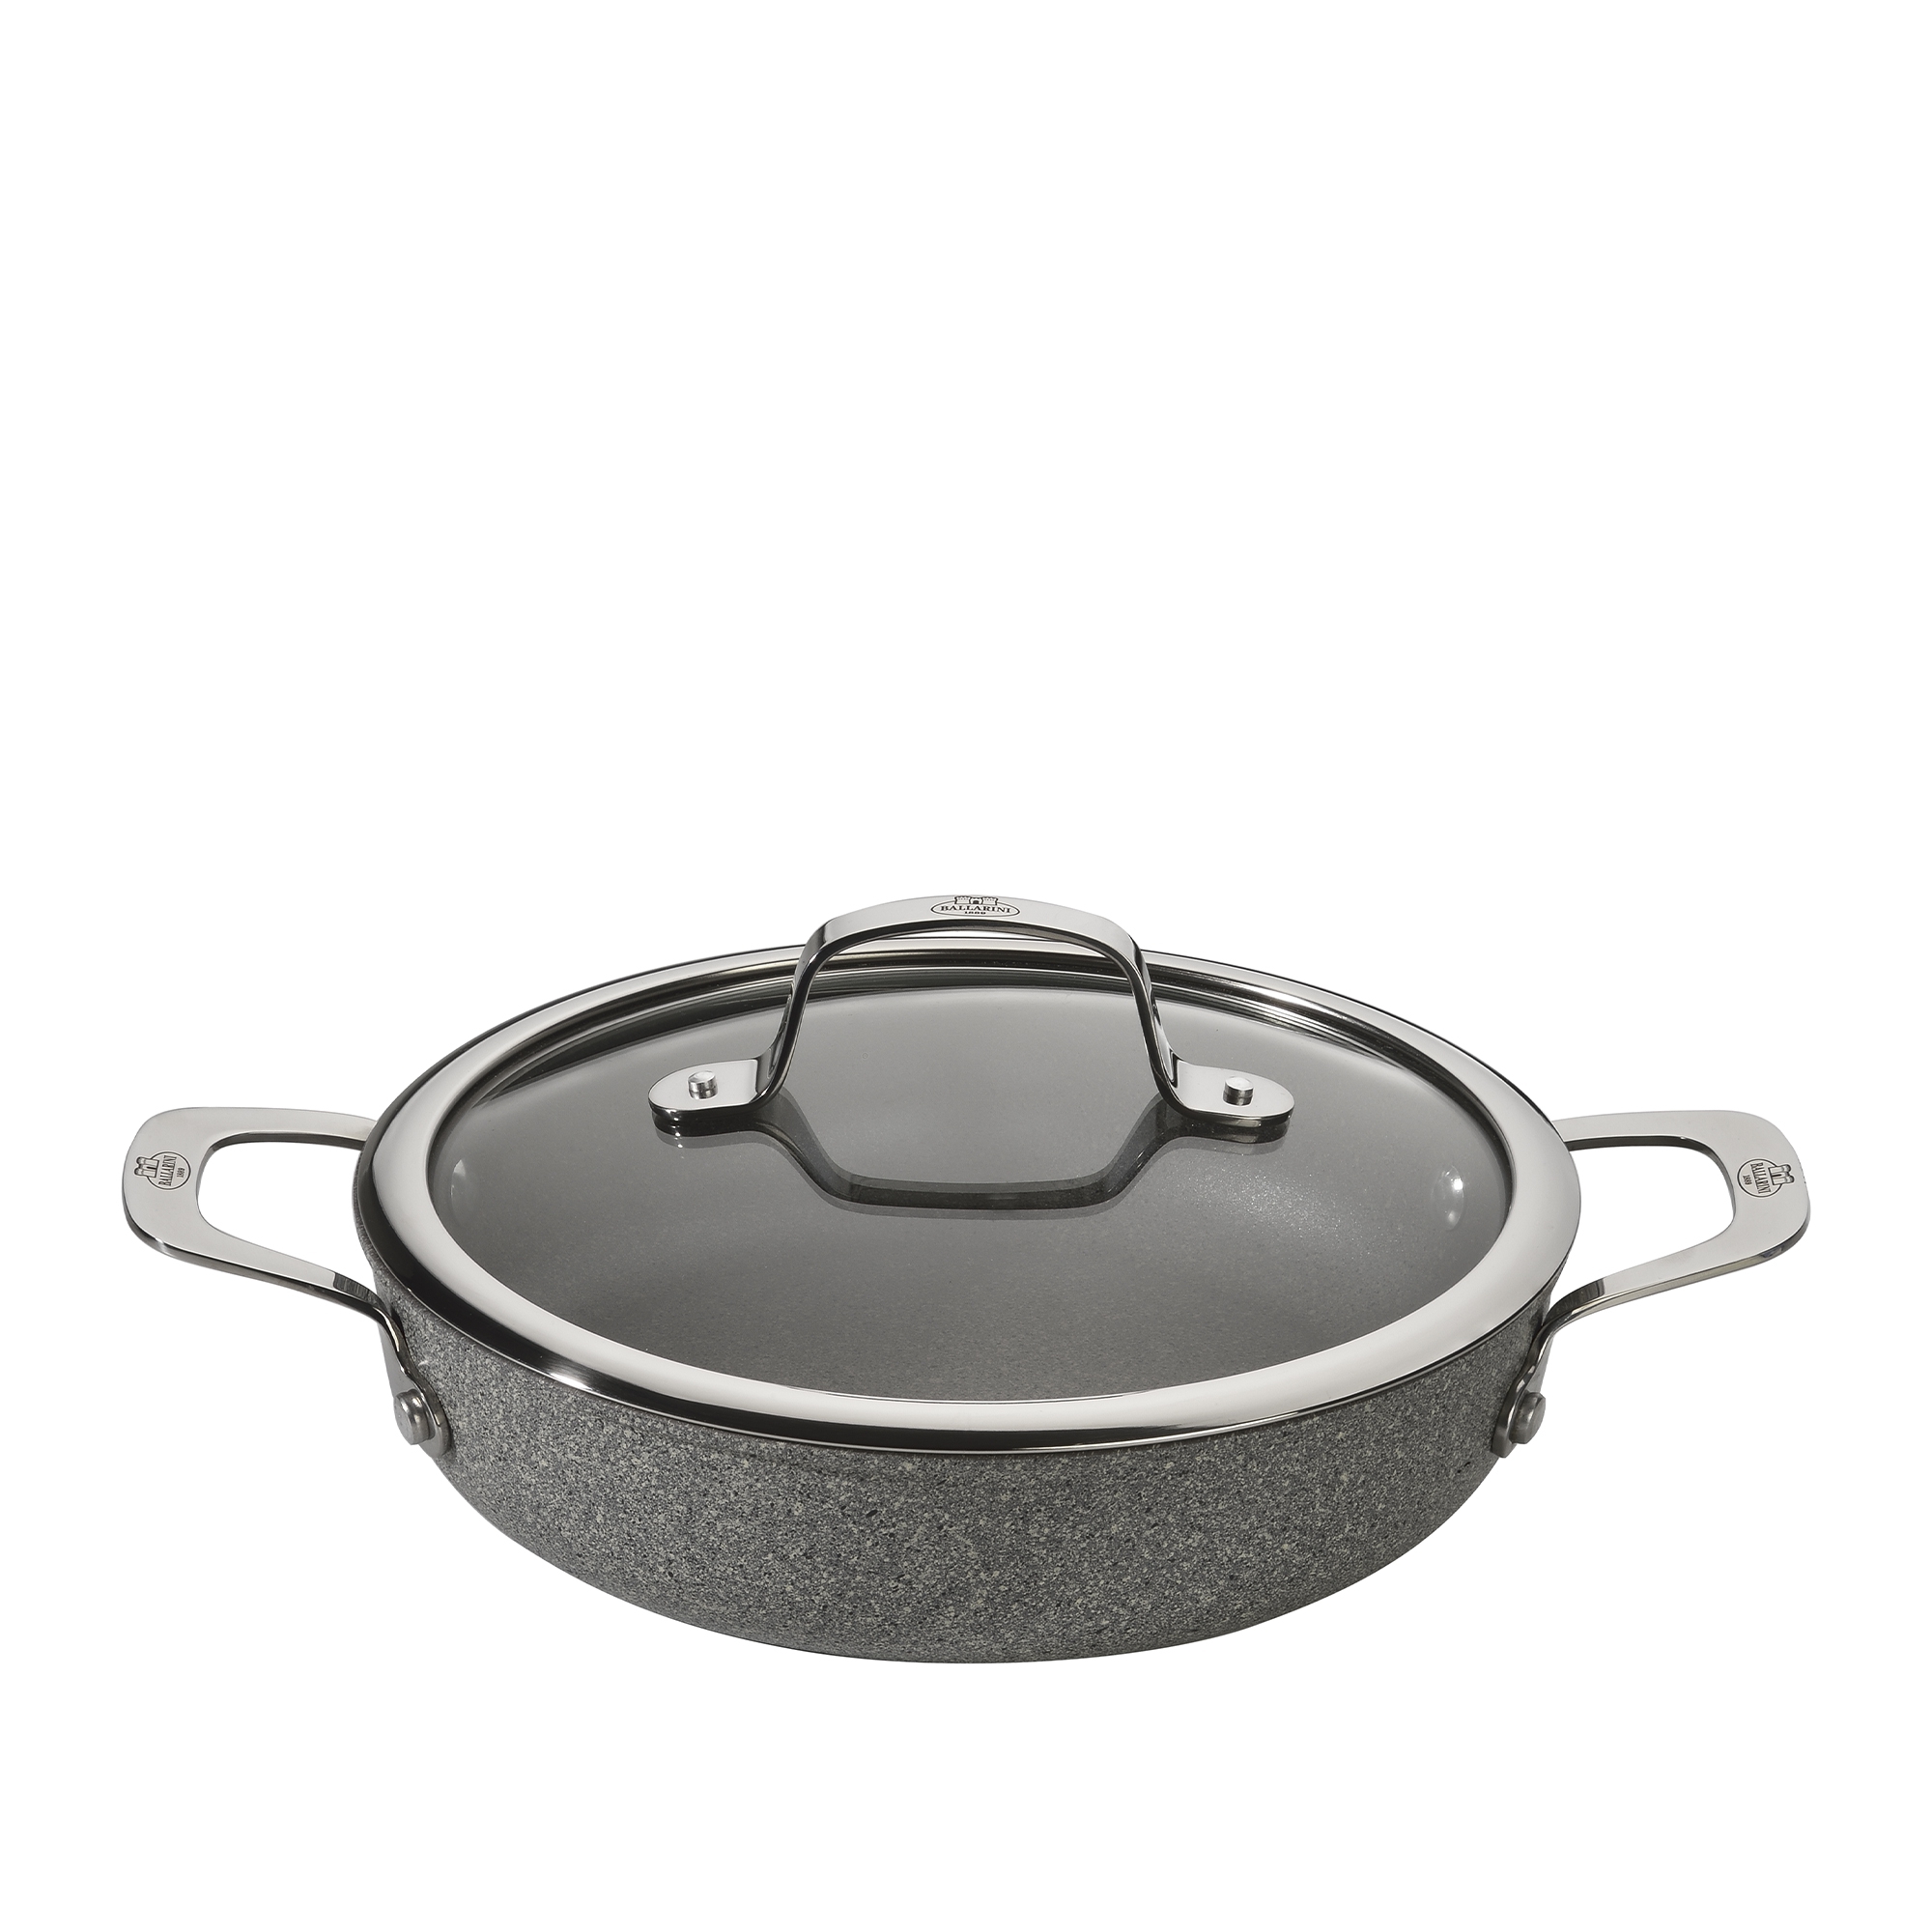 Ballarini - serving pan with glass lid - Salina granitium